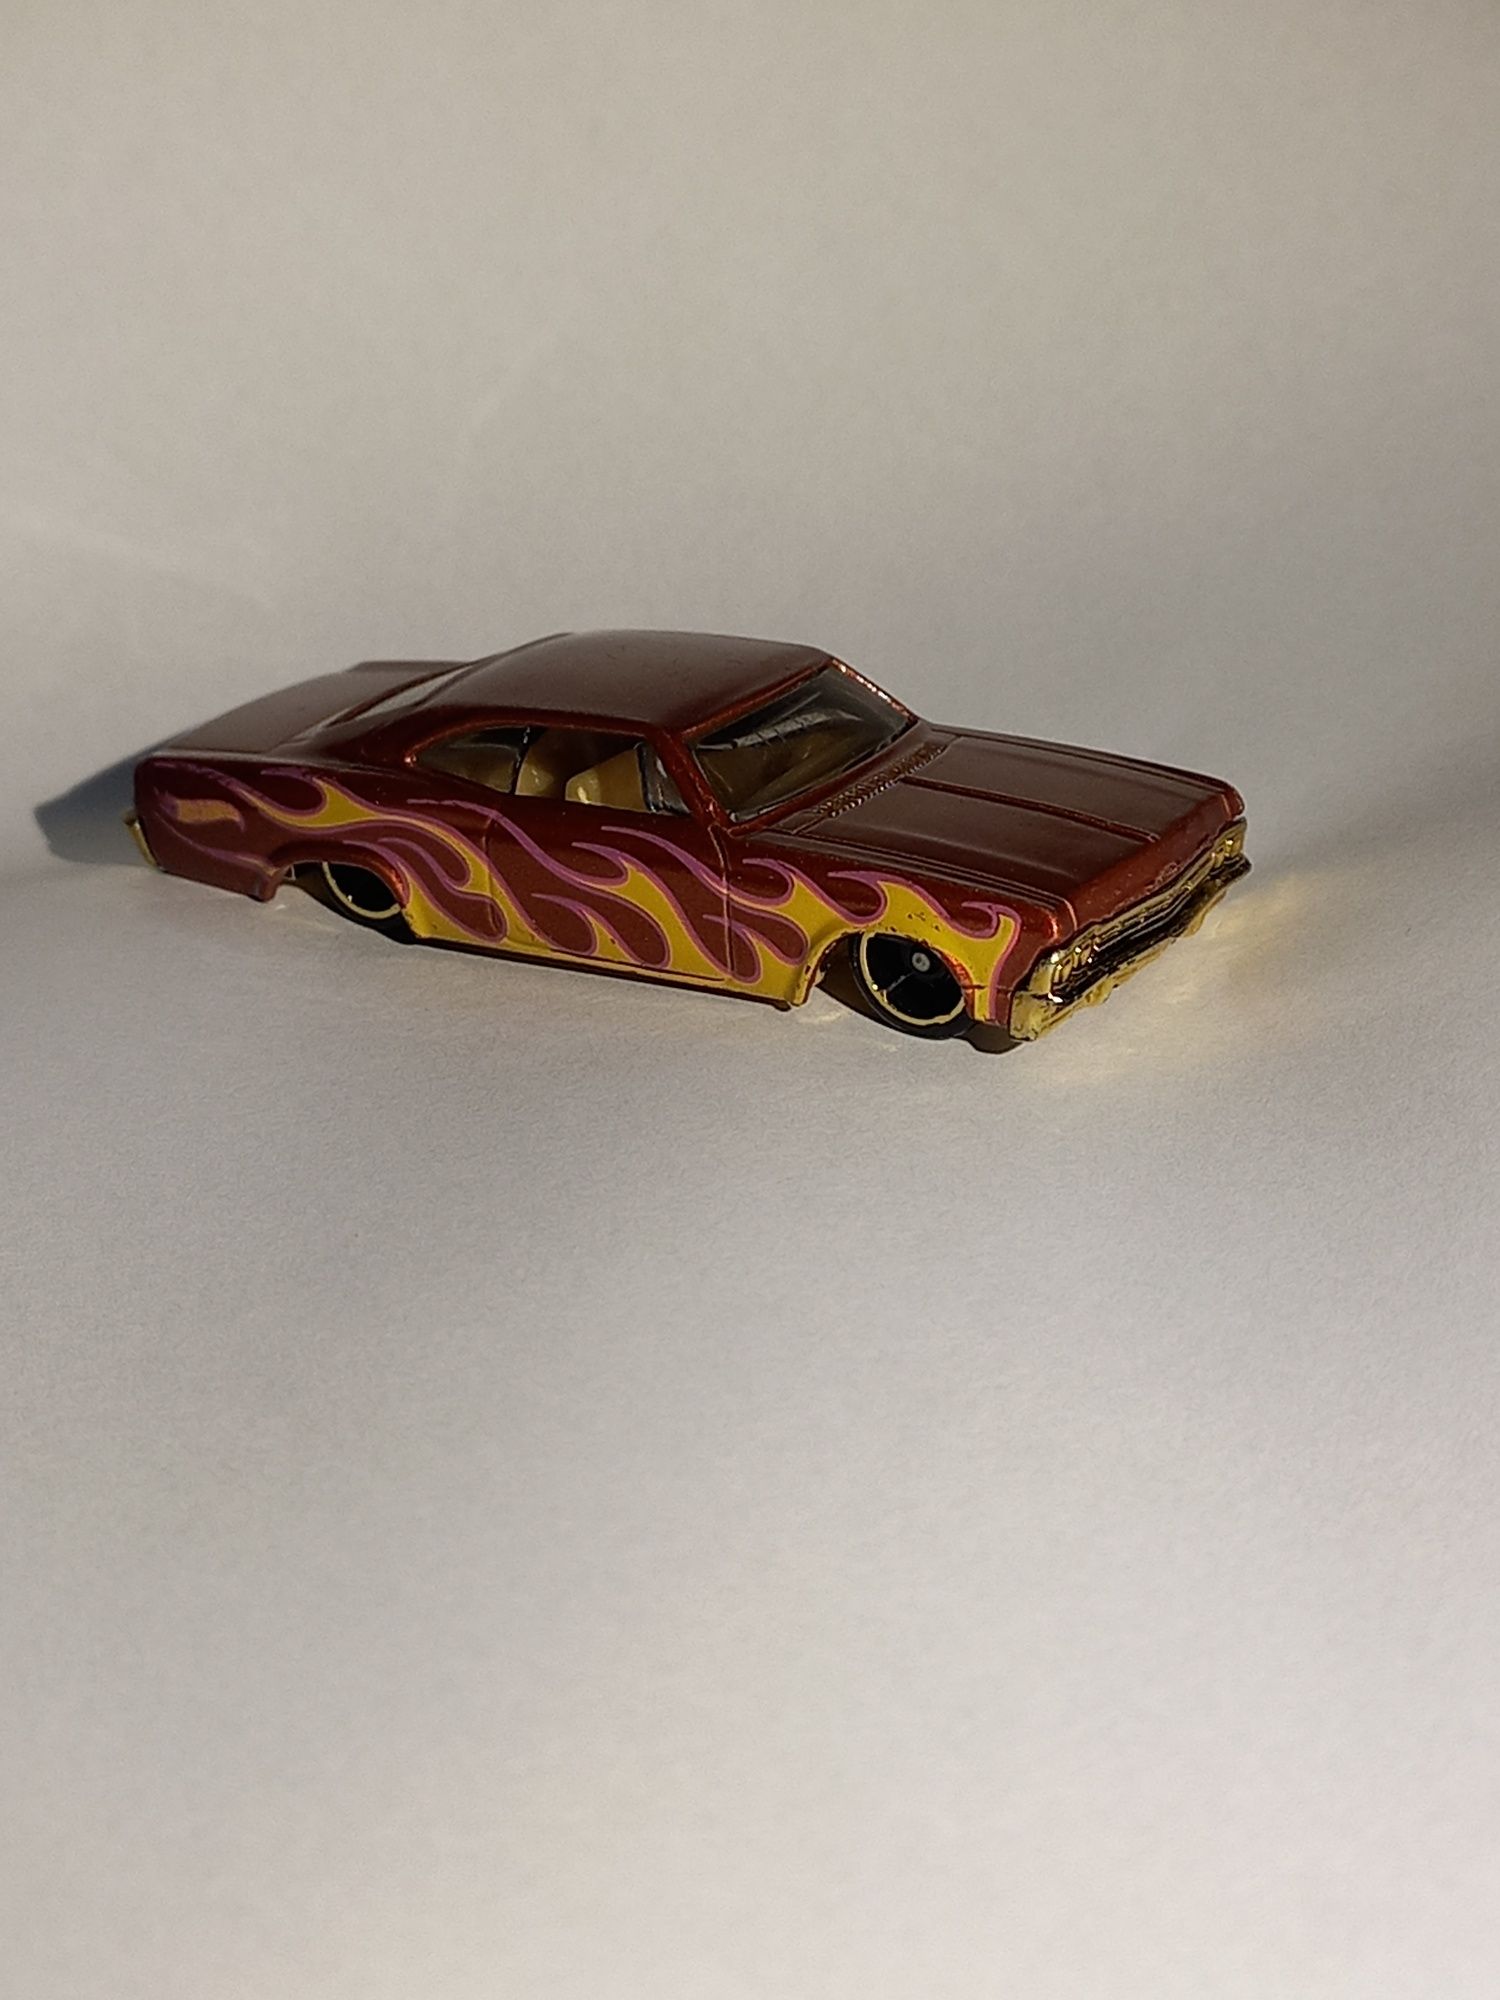 Hot Wheels '64 Chevy Impala
HW Workshop: Heat Fleet